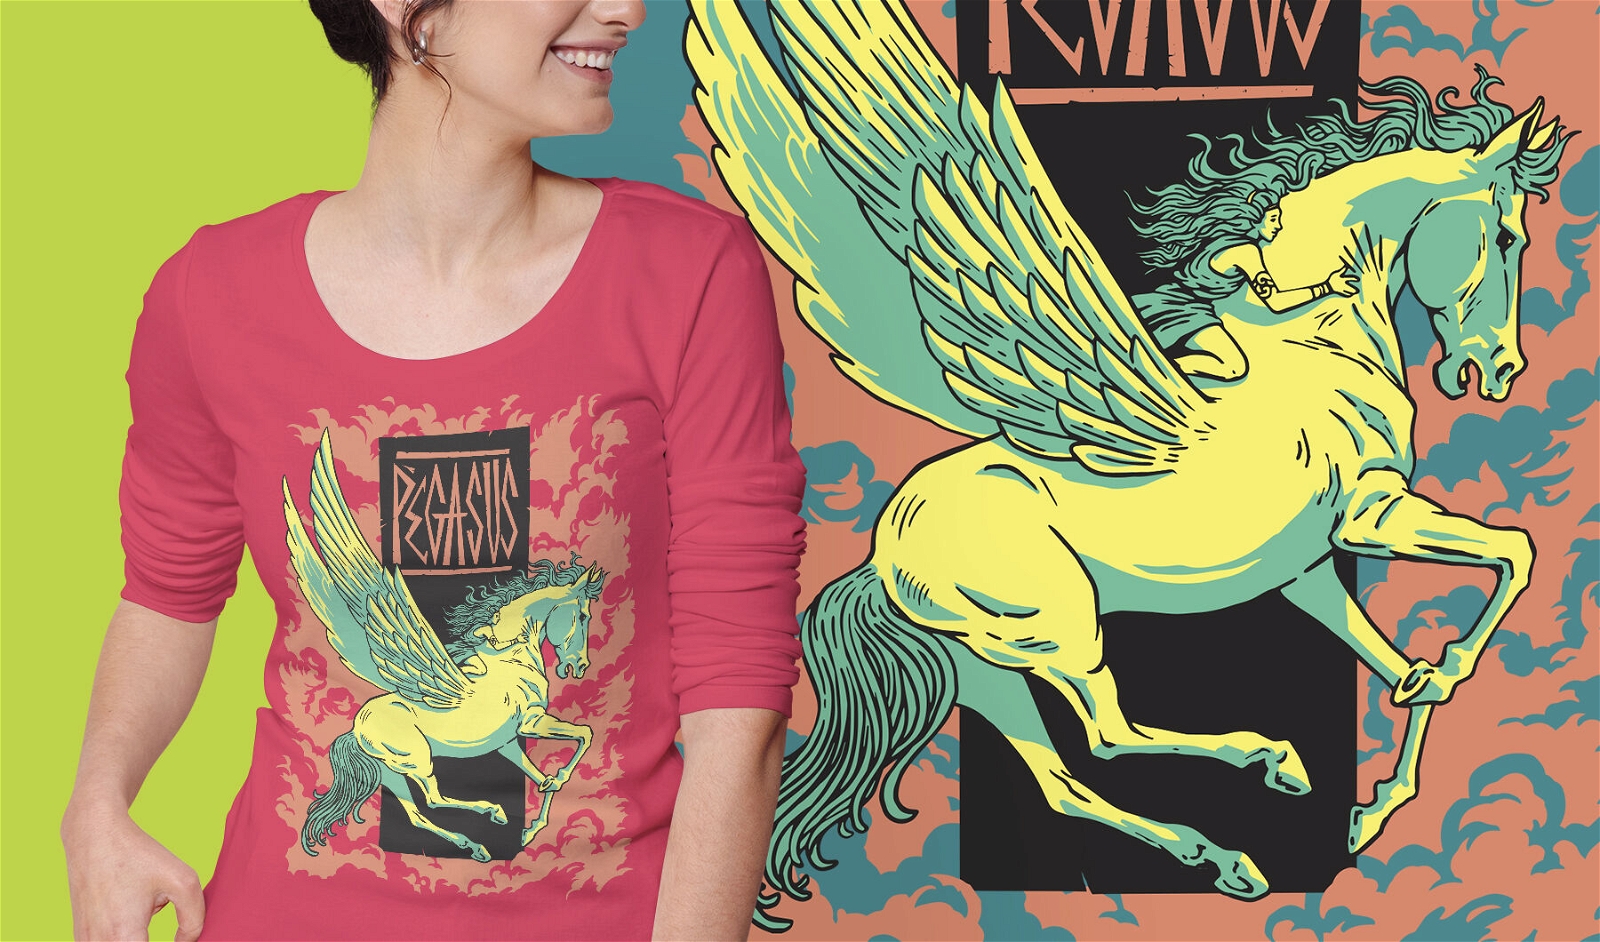 Pegasus mythisches Griechenland-T-Shirt-Design